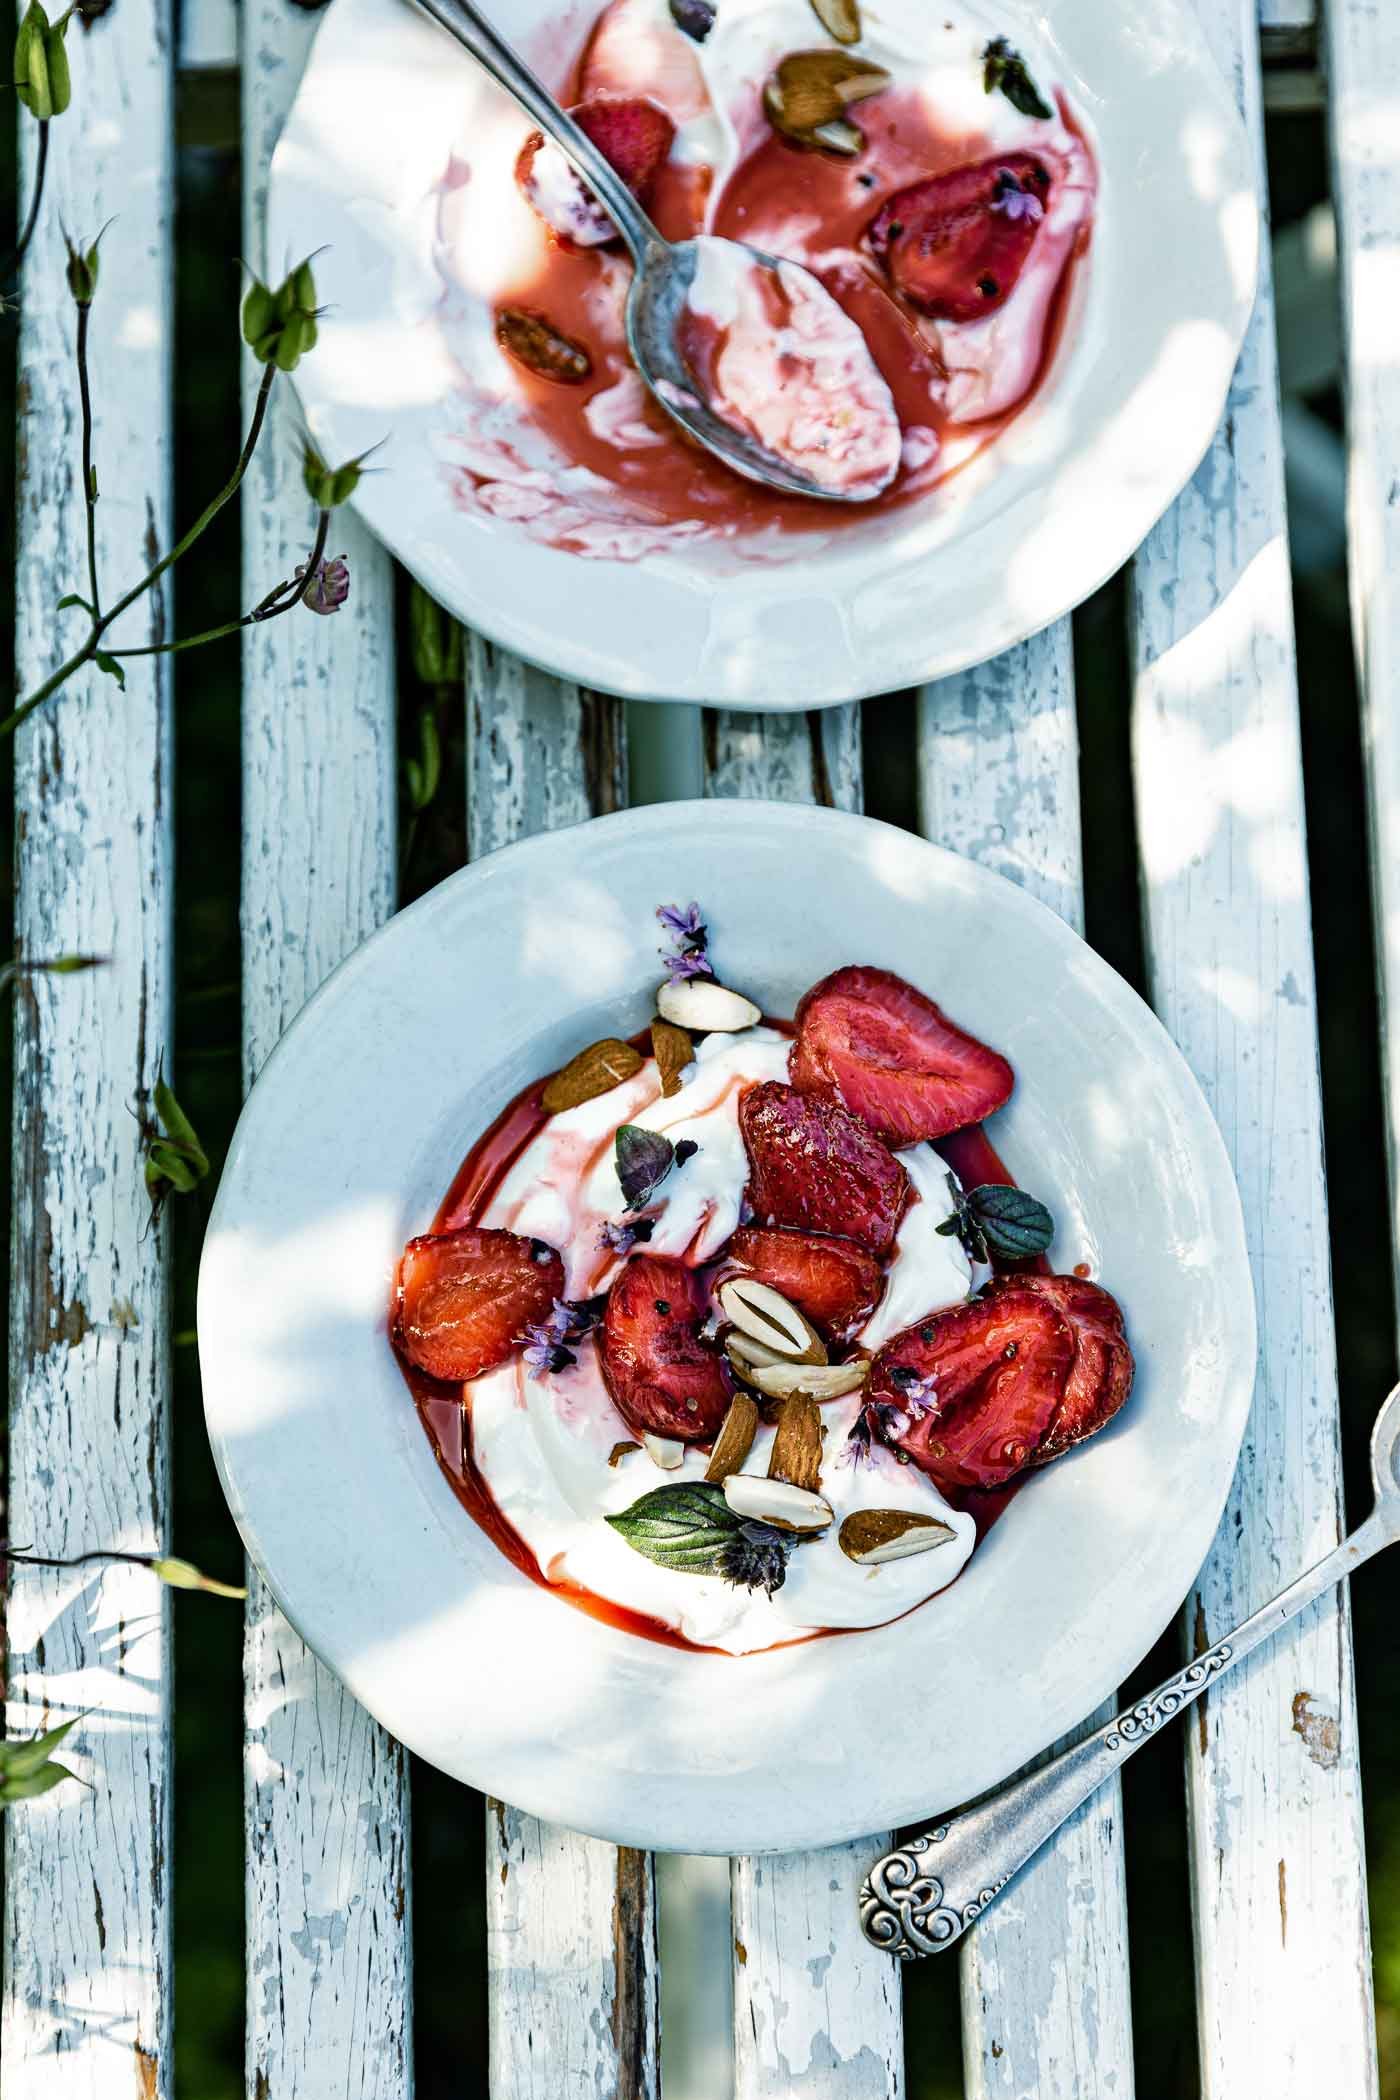 ofengebackene-erdbeeren-joghurt-mandeln-erdbeeren-rezept-veggielicious-food-fotografie_022-dt-hoch.jpg